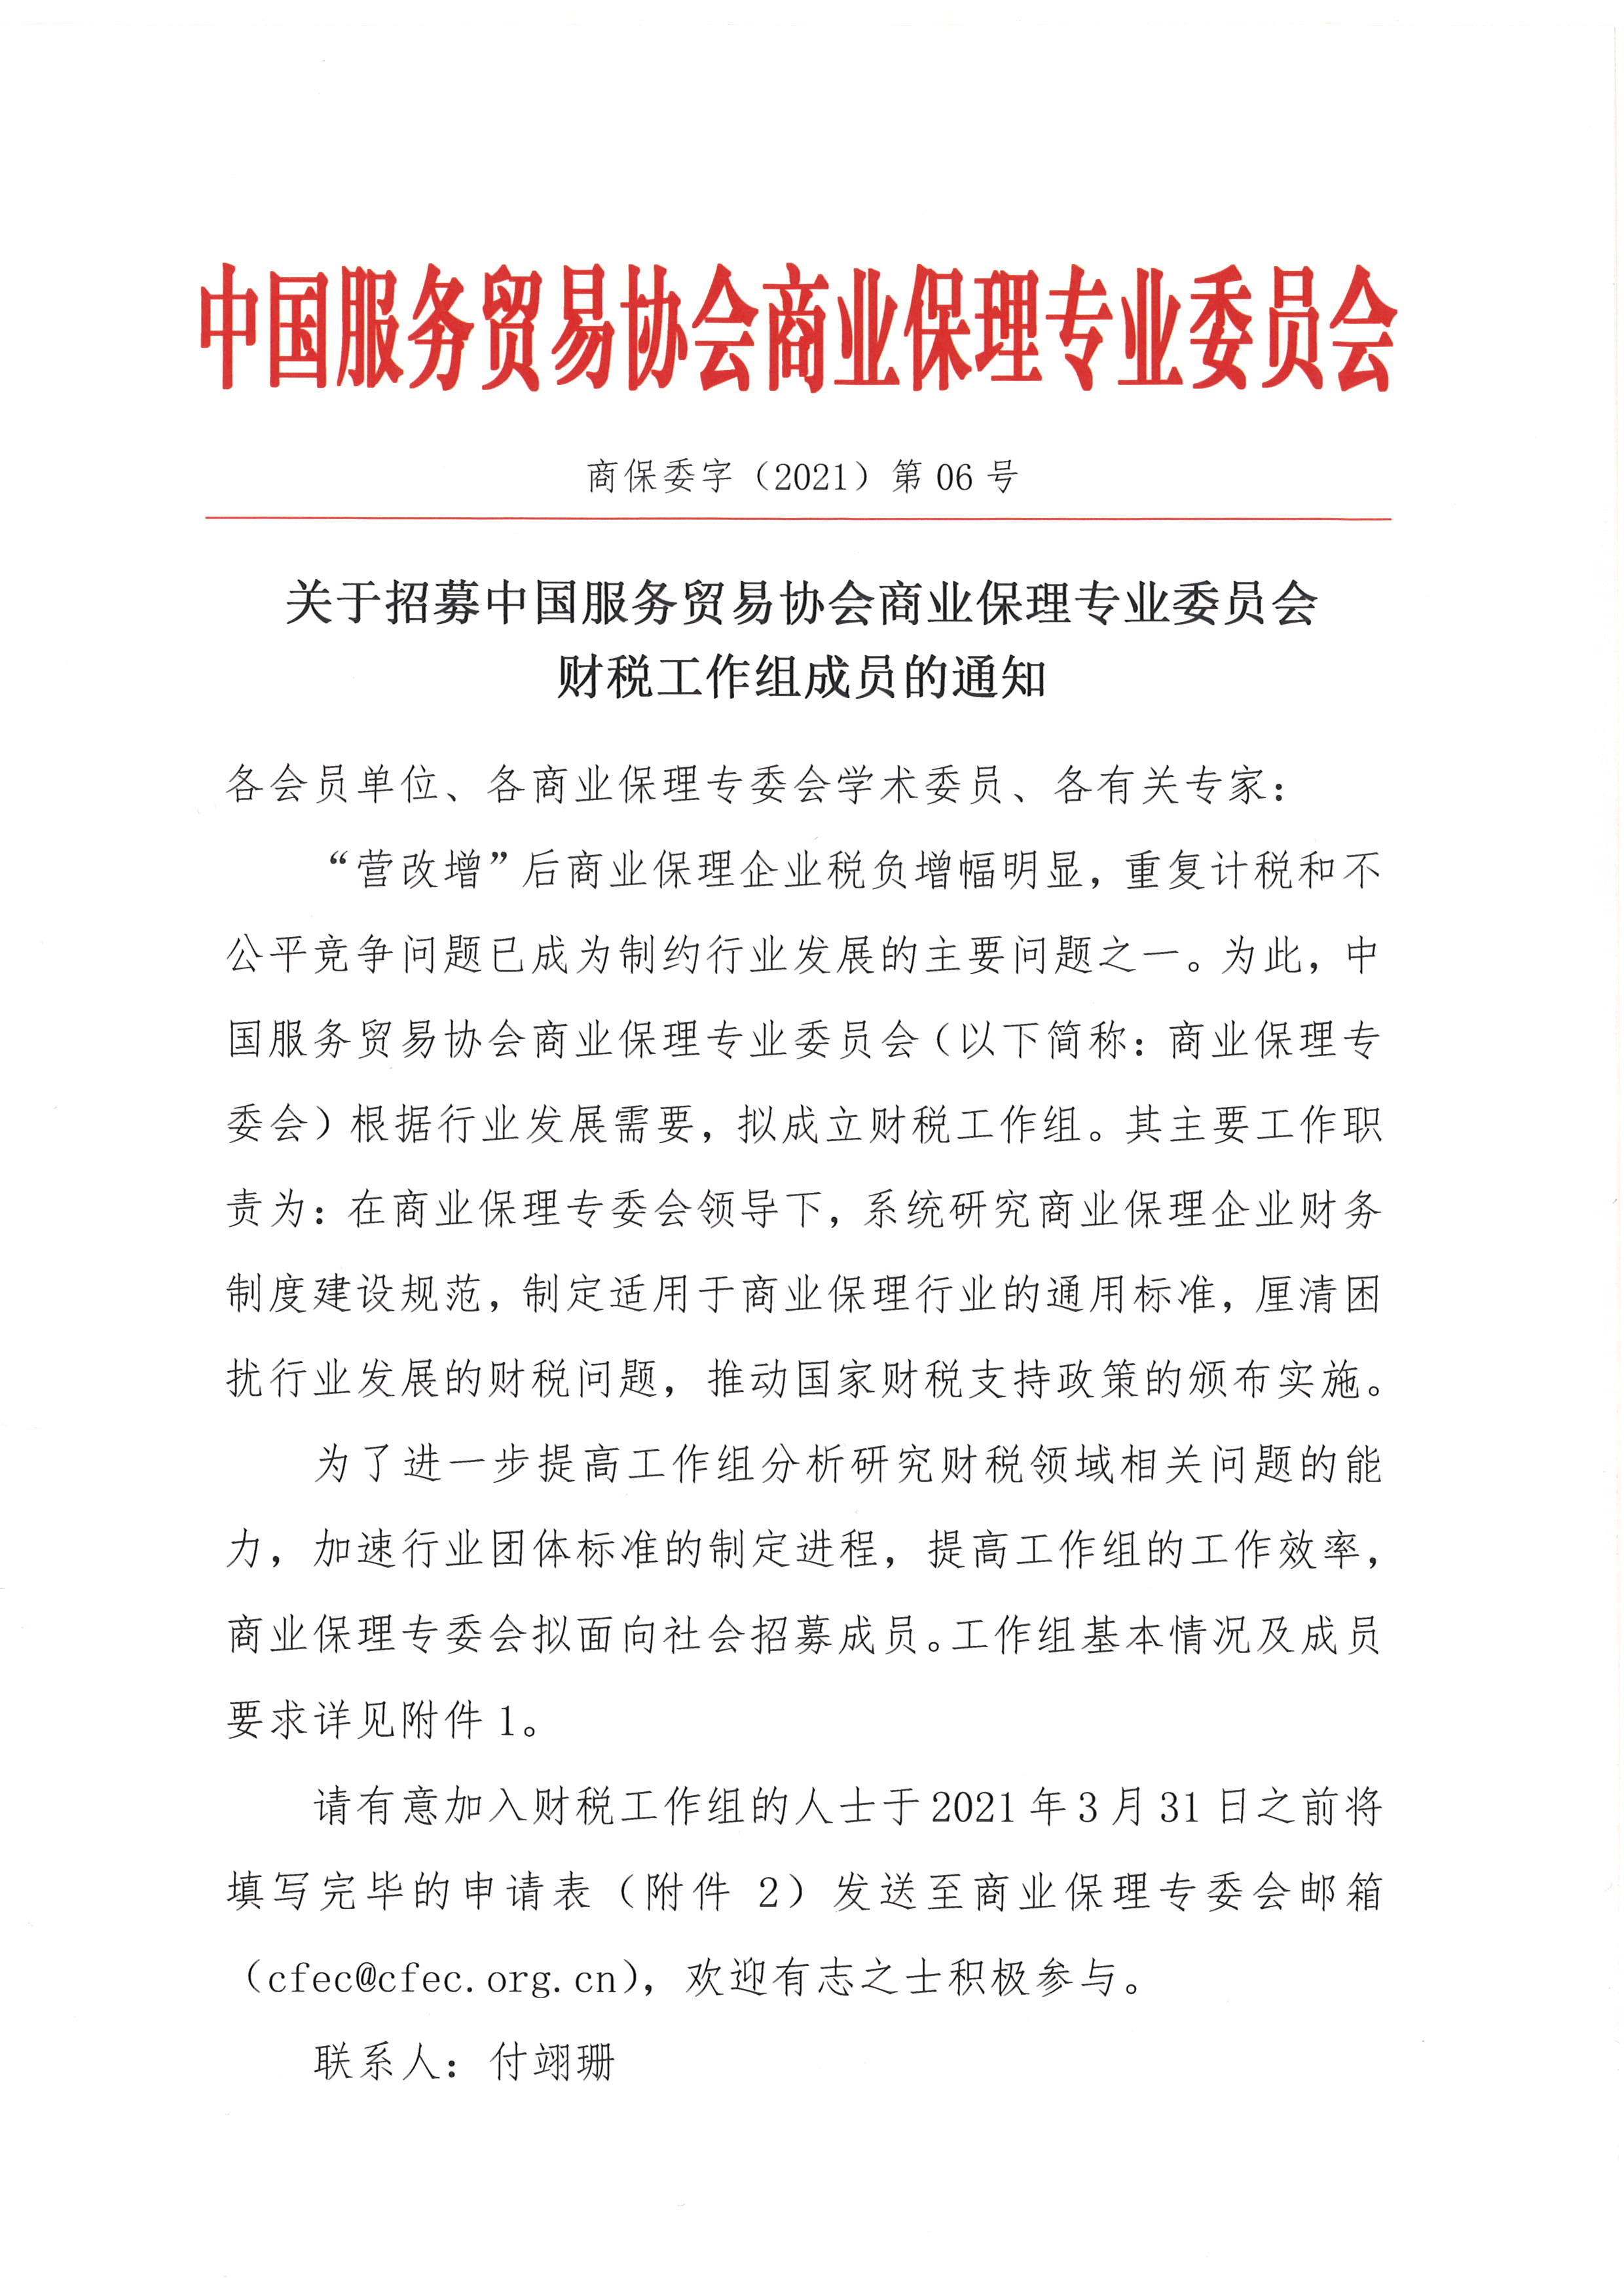 关于招募中国服务贸易协会商业保理专业委员会财税工作组成员的通知1.jpg